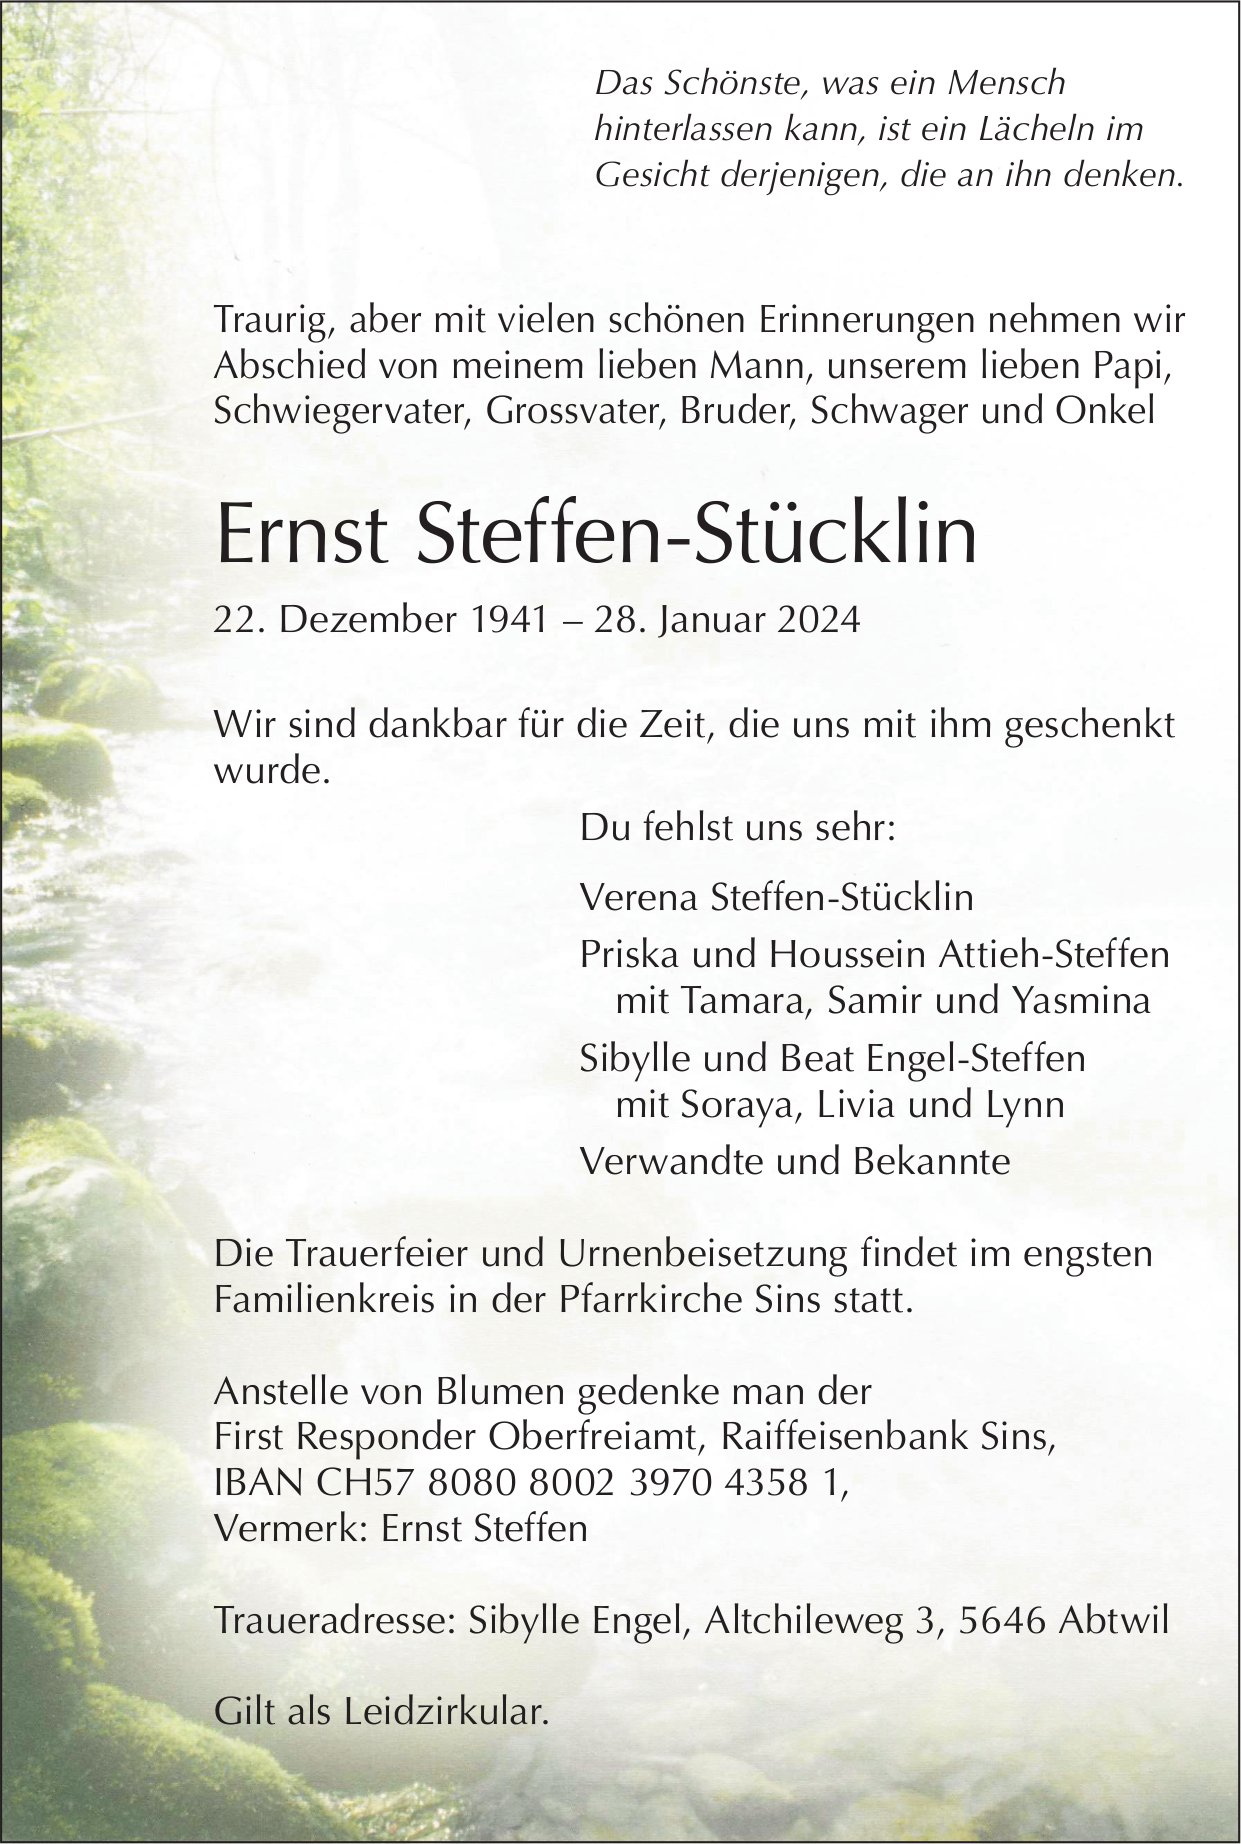 Steffen-Stücklin Ernst, Januar 2024 / TA